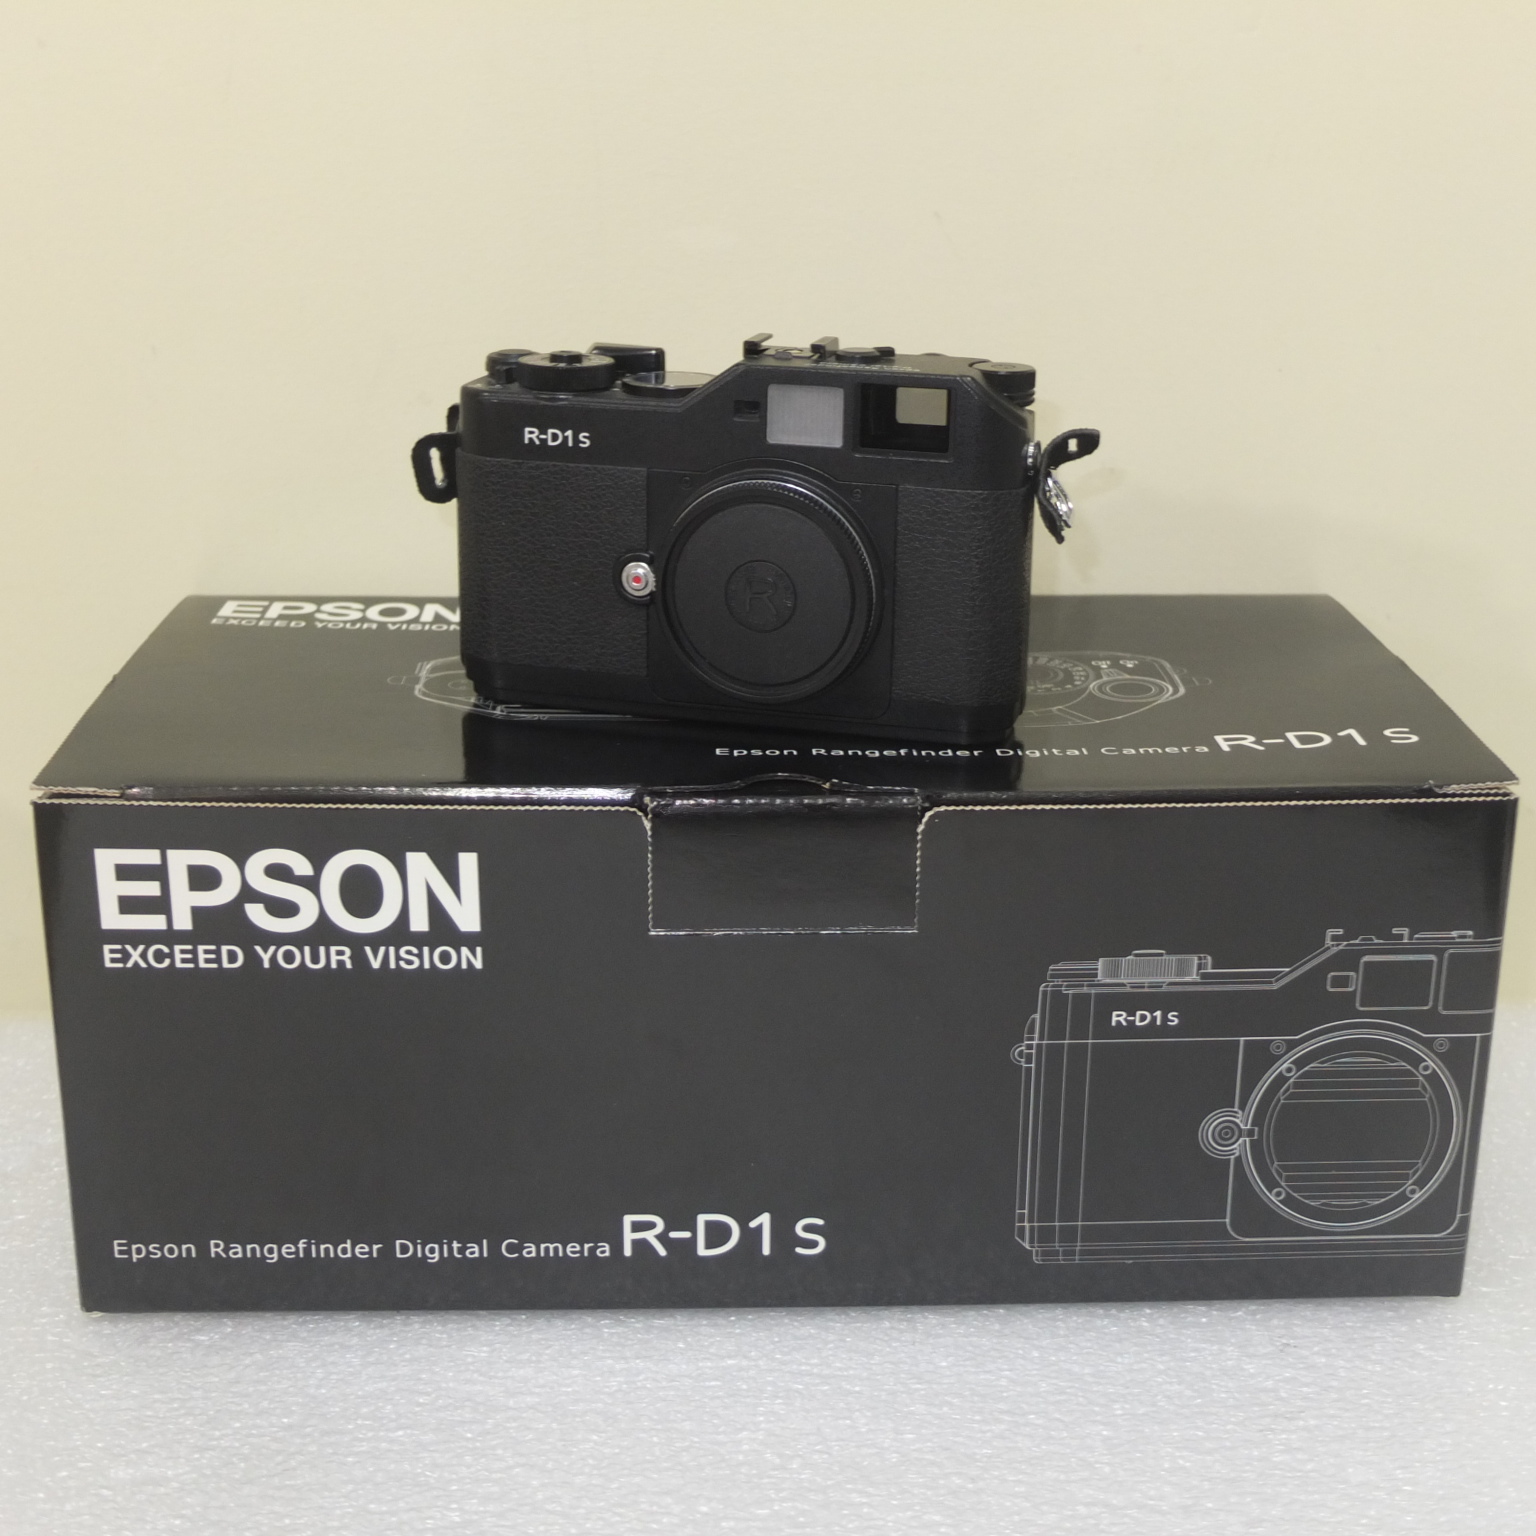 EPSON デジタルレンジファインダーカメラ R-D1s